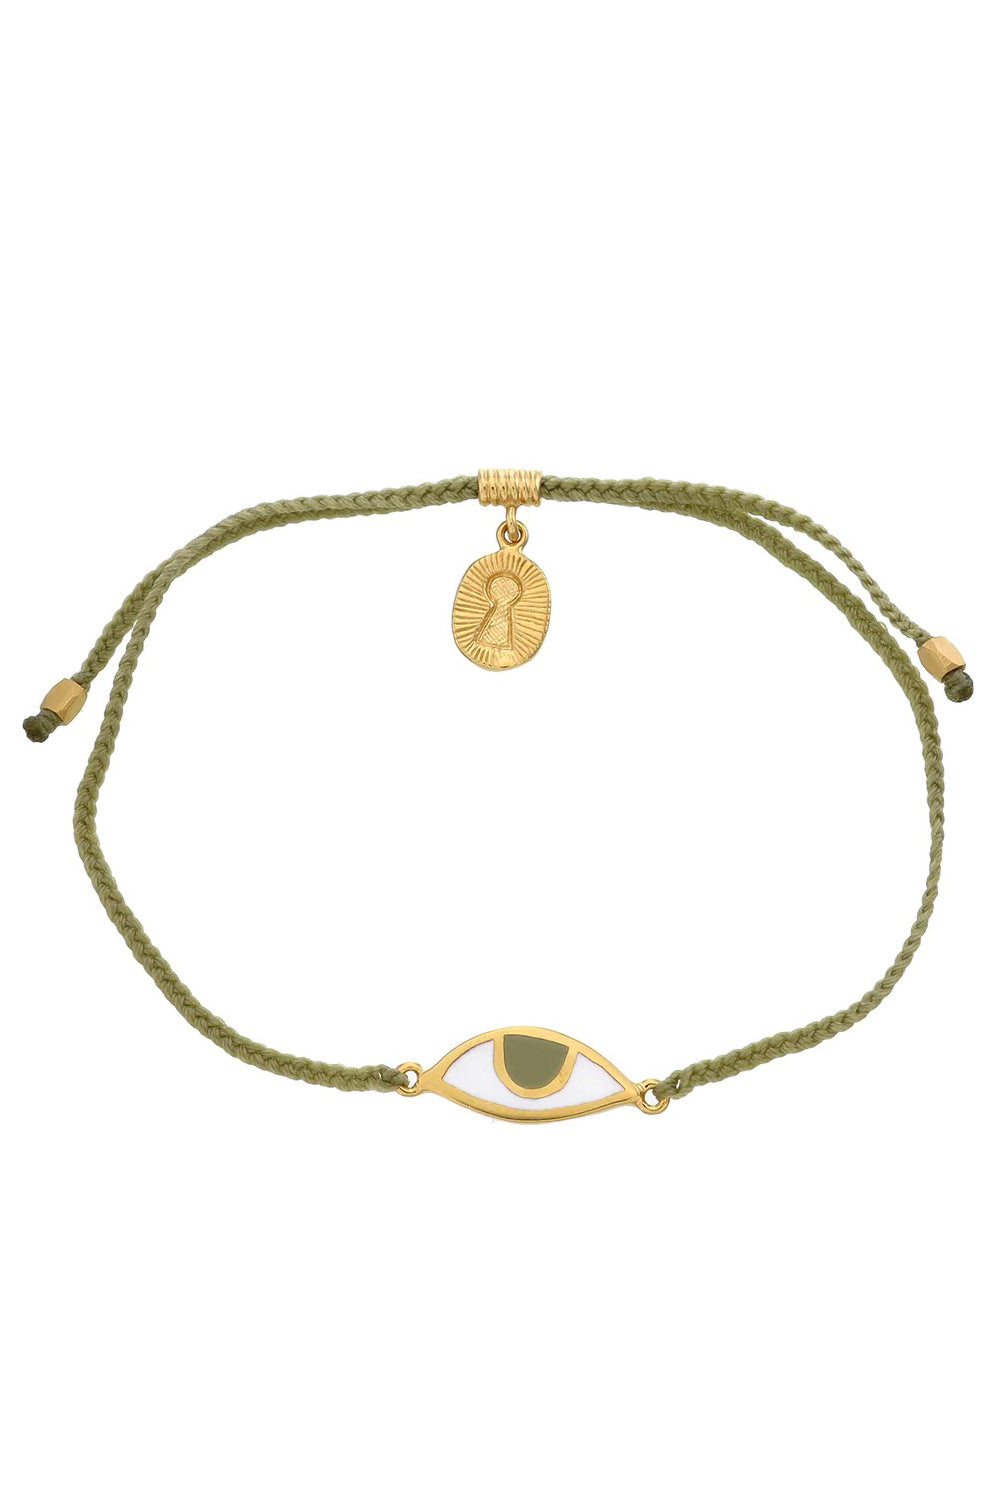 Eye Protection Bracelet | Sage Green - Hazel - Gold